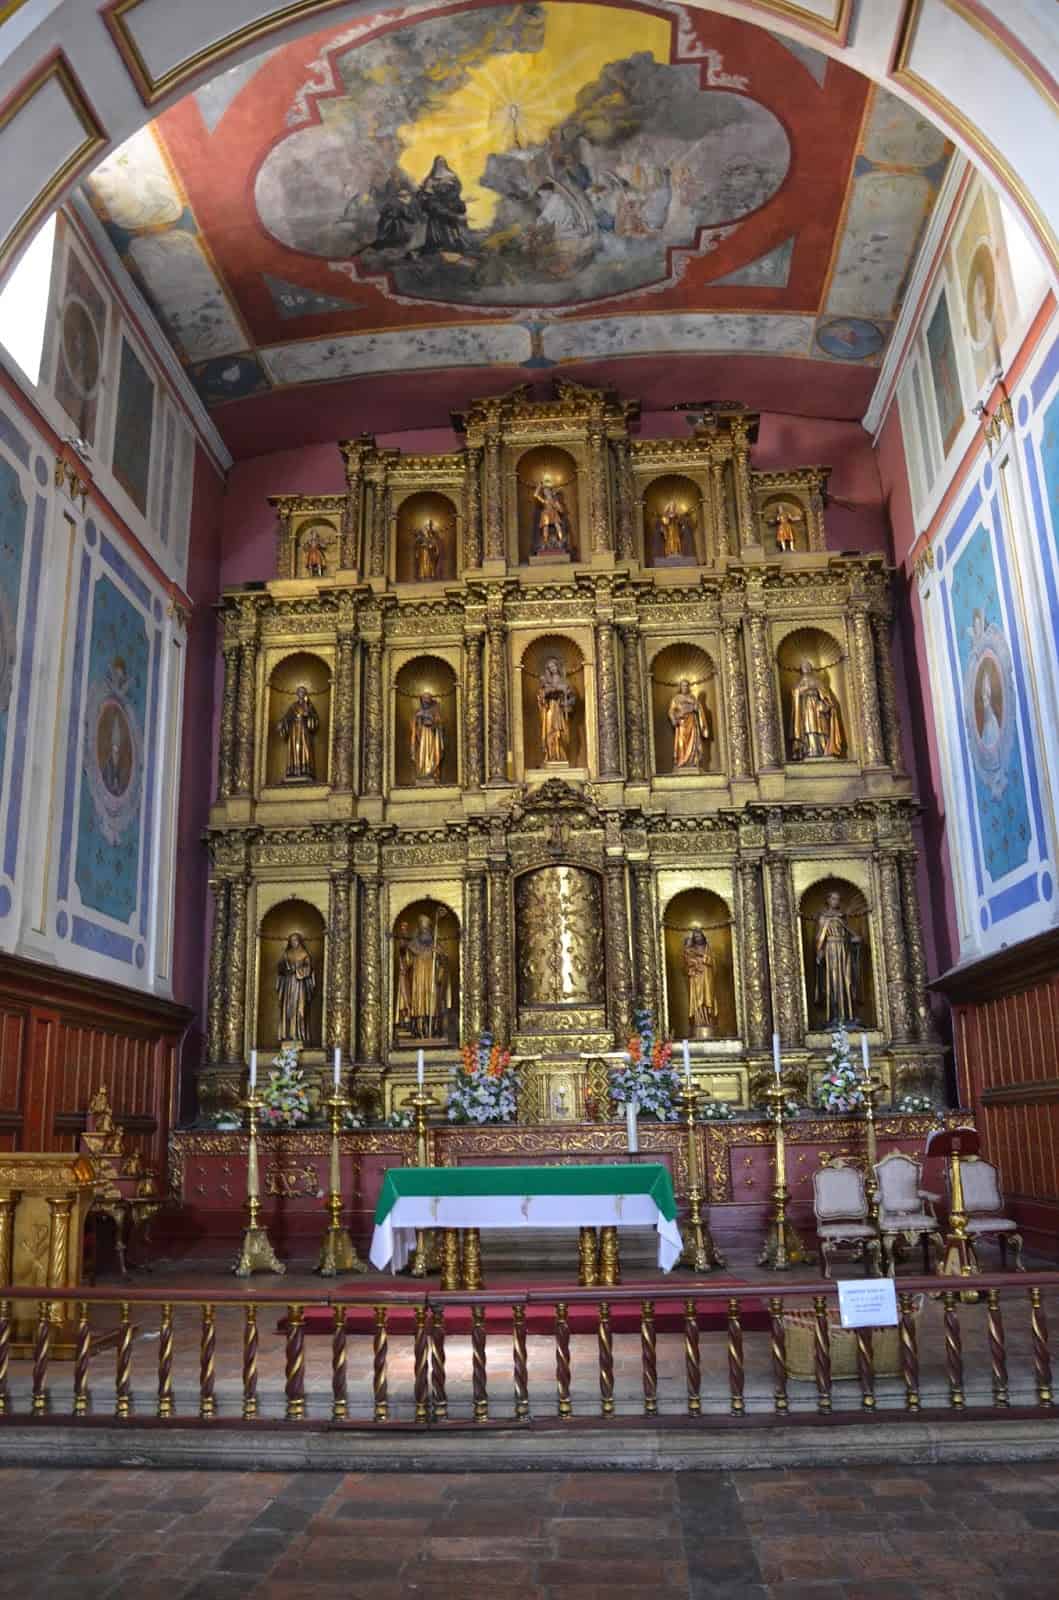 Altarpiece of Our Lady of La Candelaria in La Candelaria, Bogotá, Colombia